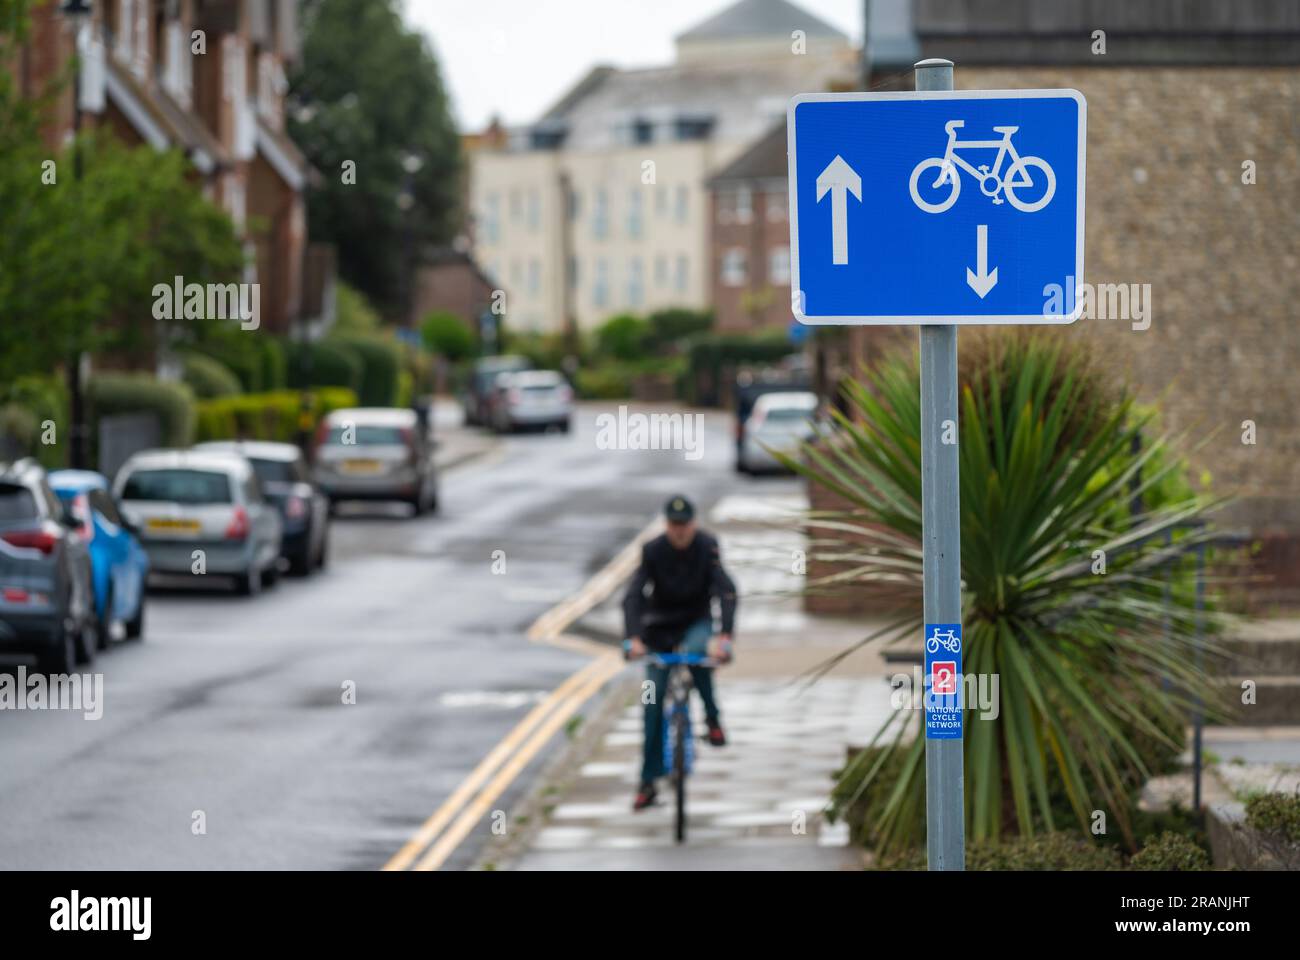 Signe de vélo à deux voies avec cycliste sur une rue à sens unique, route britannique, 2 voies pour les cyclistes mais 1 voies pour les voitures. En Angleterre, Royaume-Uni. Banque D'Images